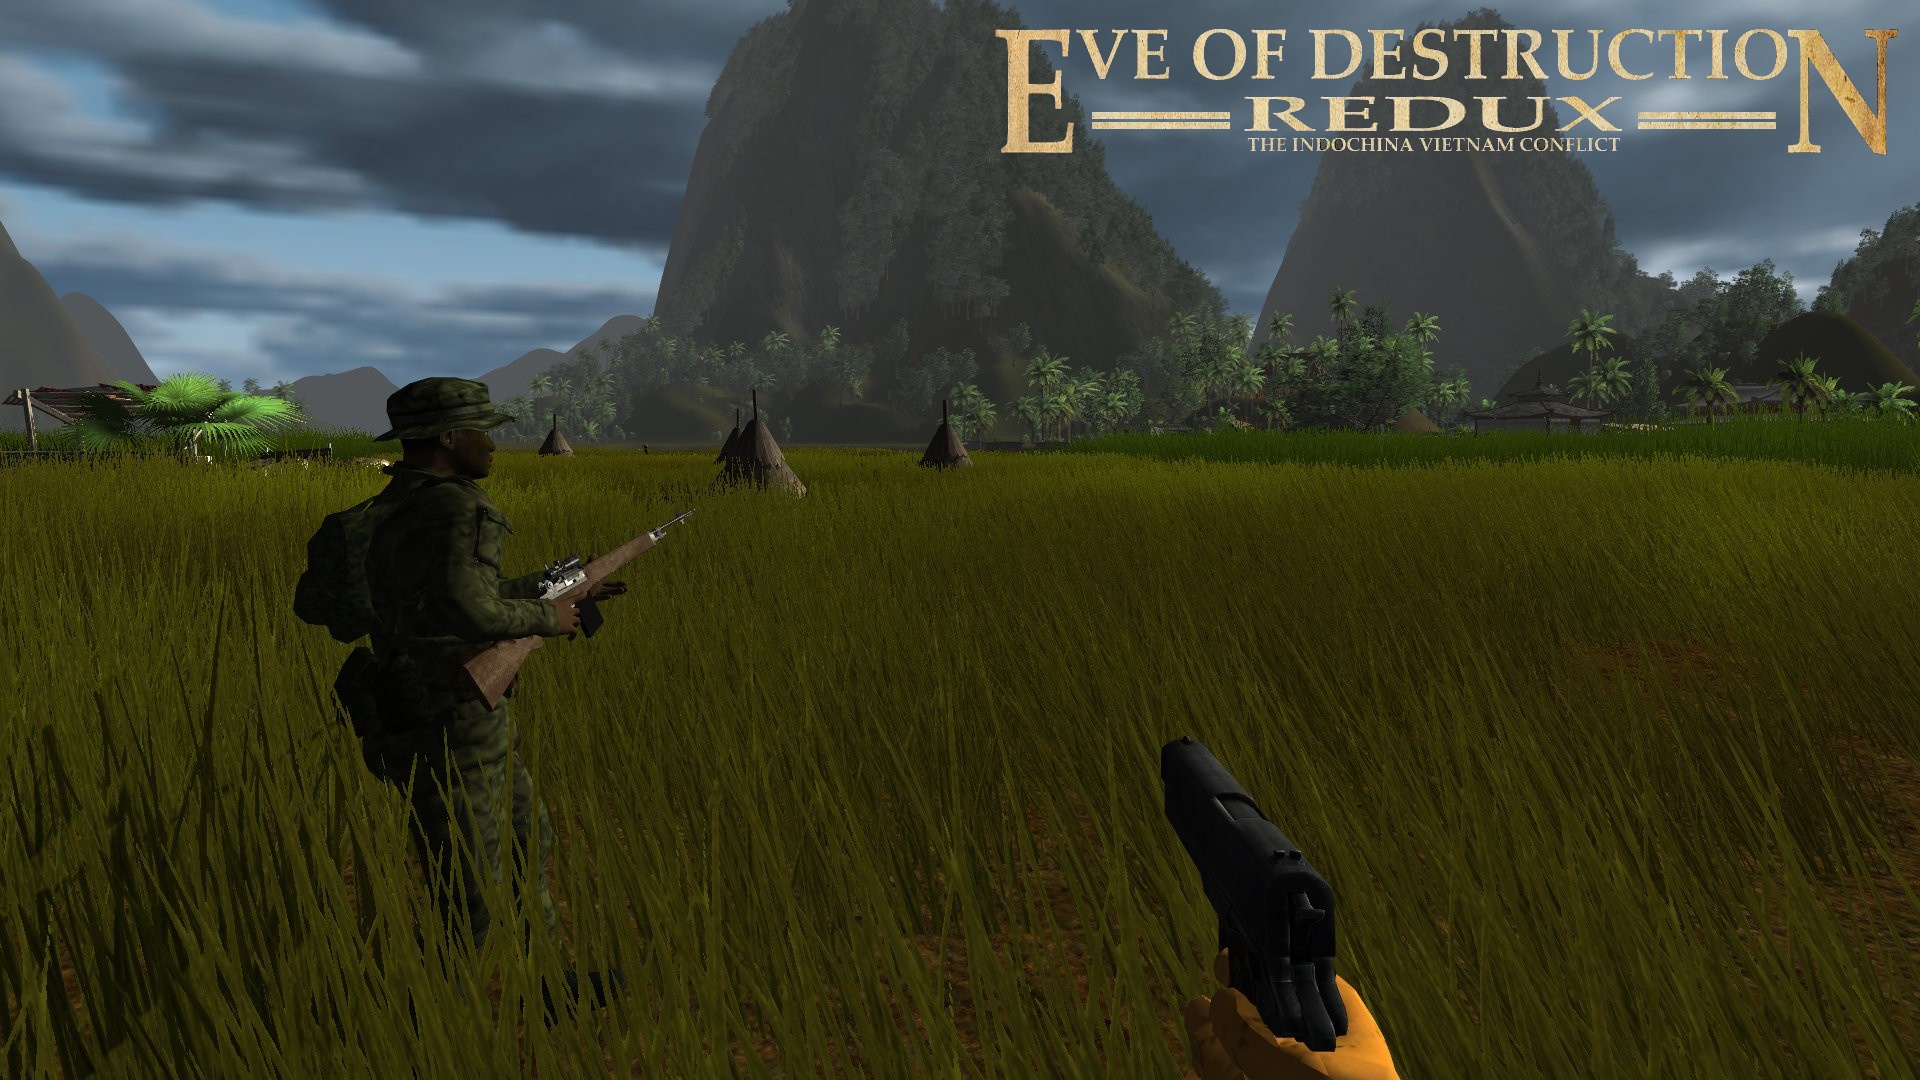 Eve of Destruction - REDUX VIETNAM screenshot